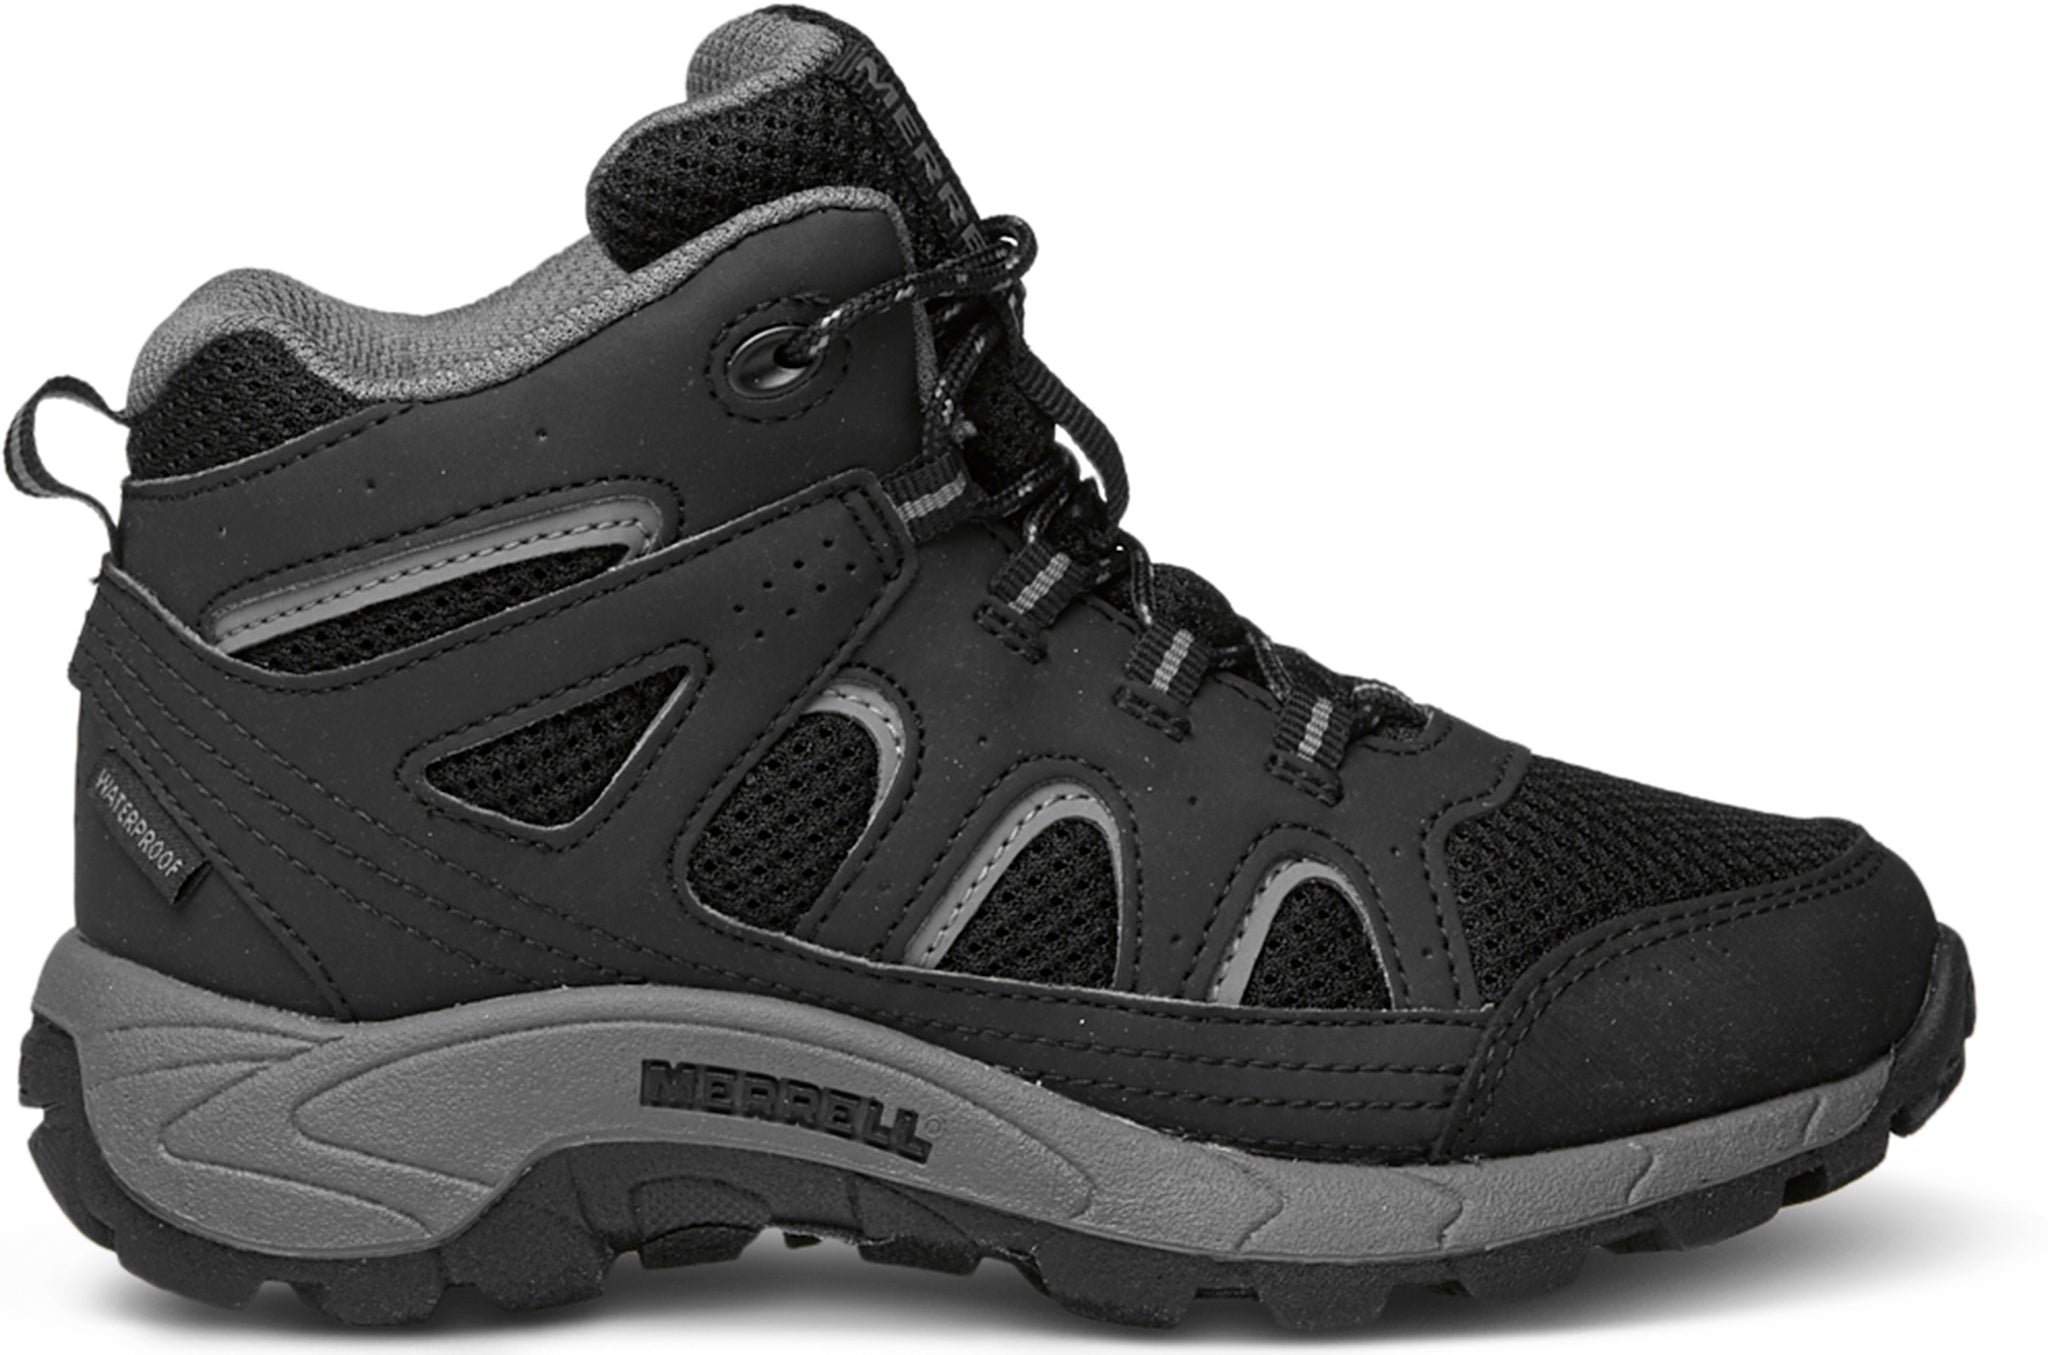 Merrell Oakcreek Mid Waterproof Hiking Boots for Men